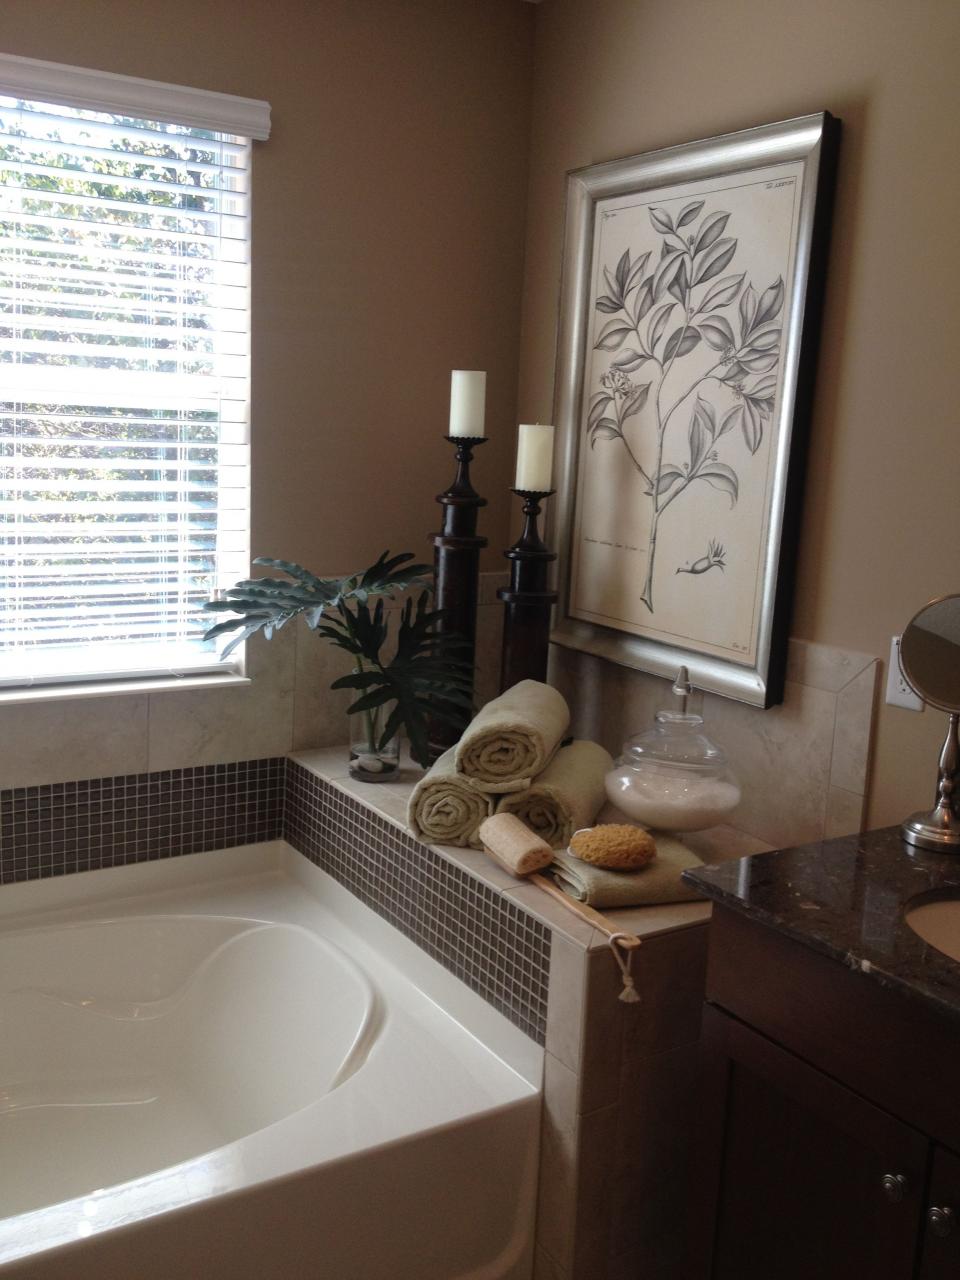 The 25+ best Bath tub decor ideas ideas on Pinterest Diy bathroom